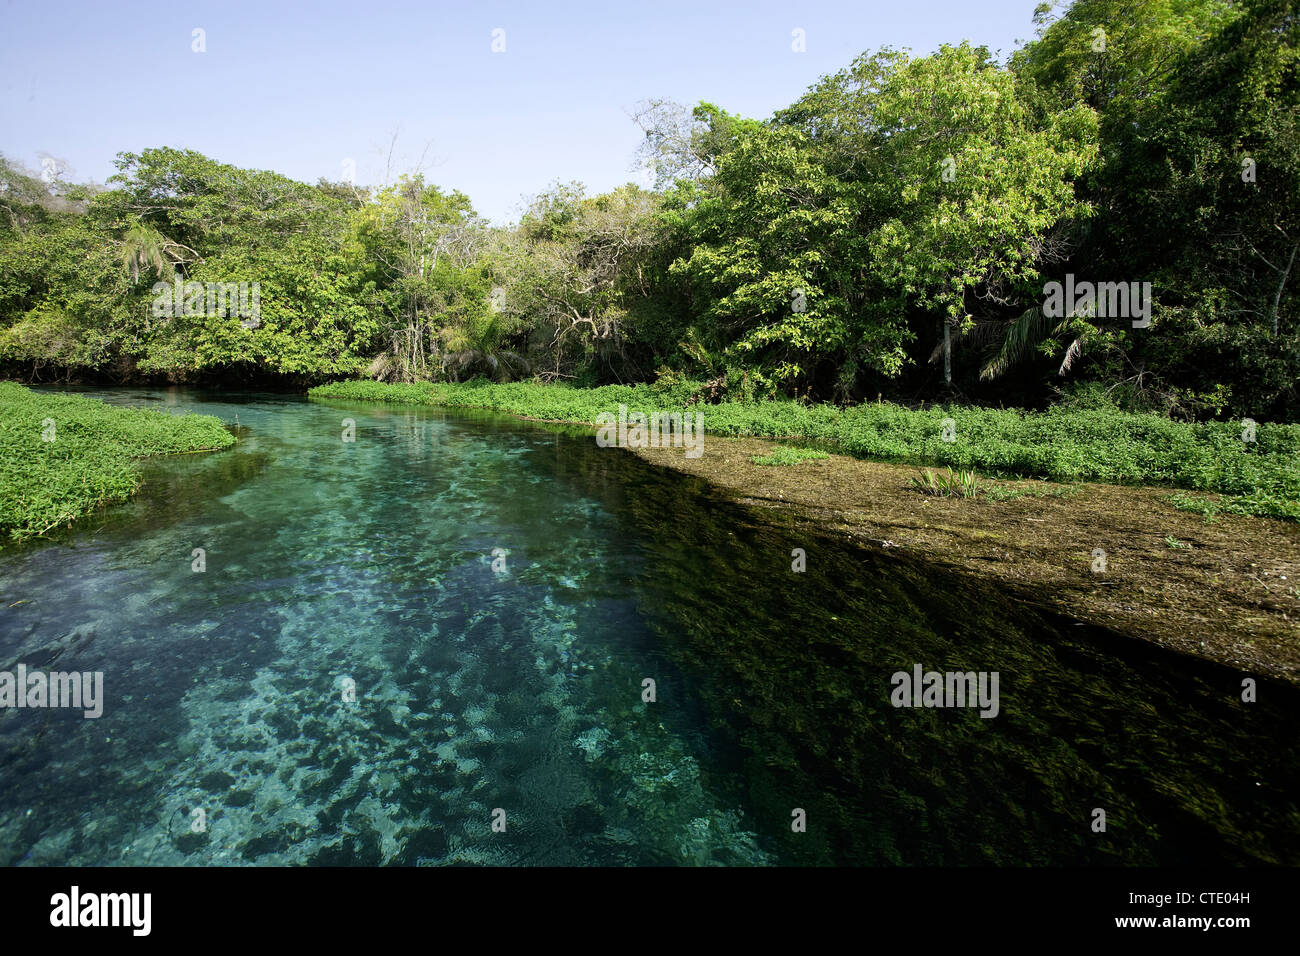 La plongée dans la rivière Sucuri, bonite, Mato Grosso do Sul, Brésil Banque D'Images